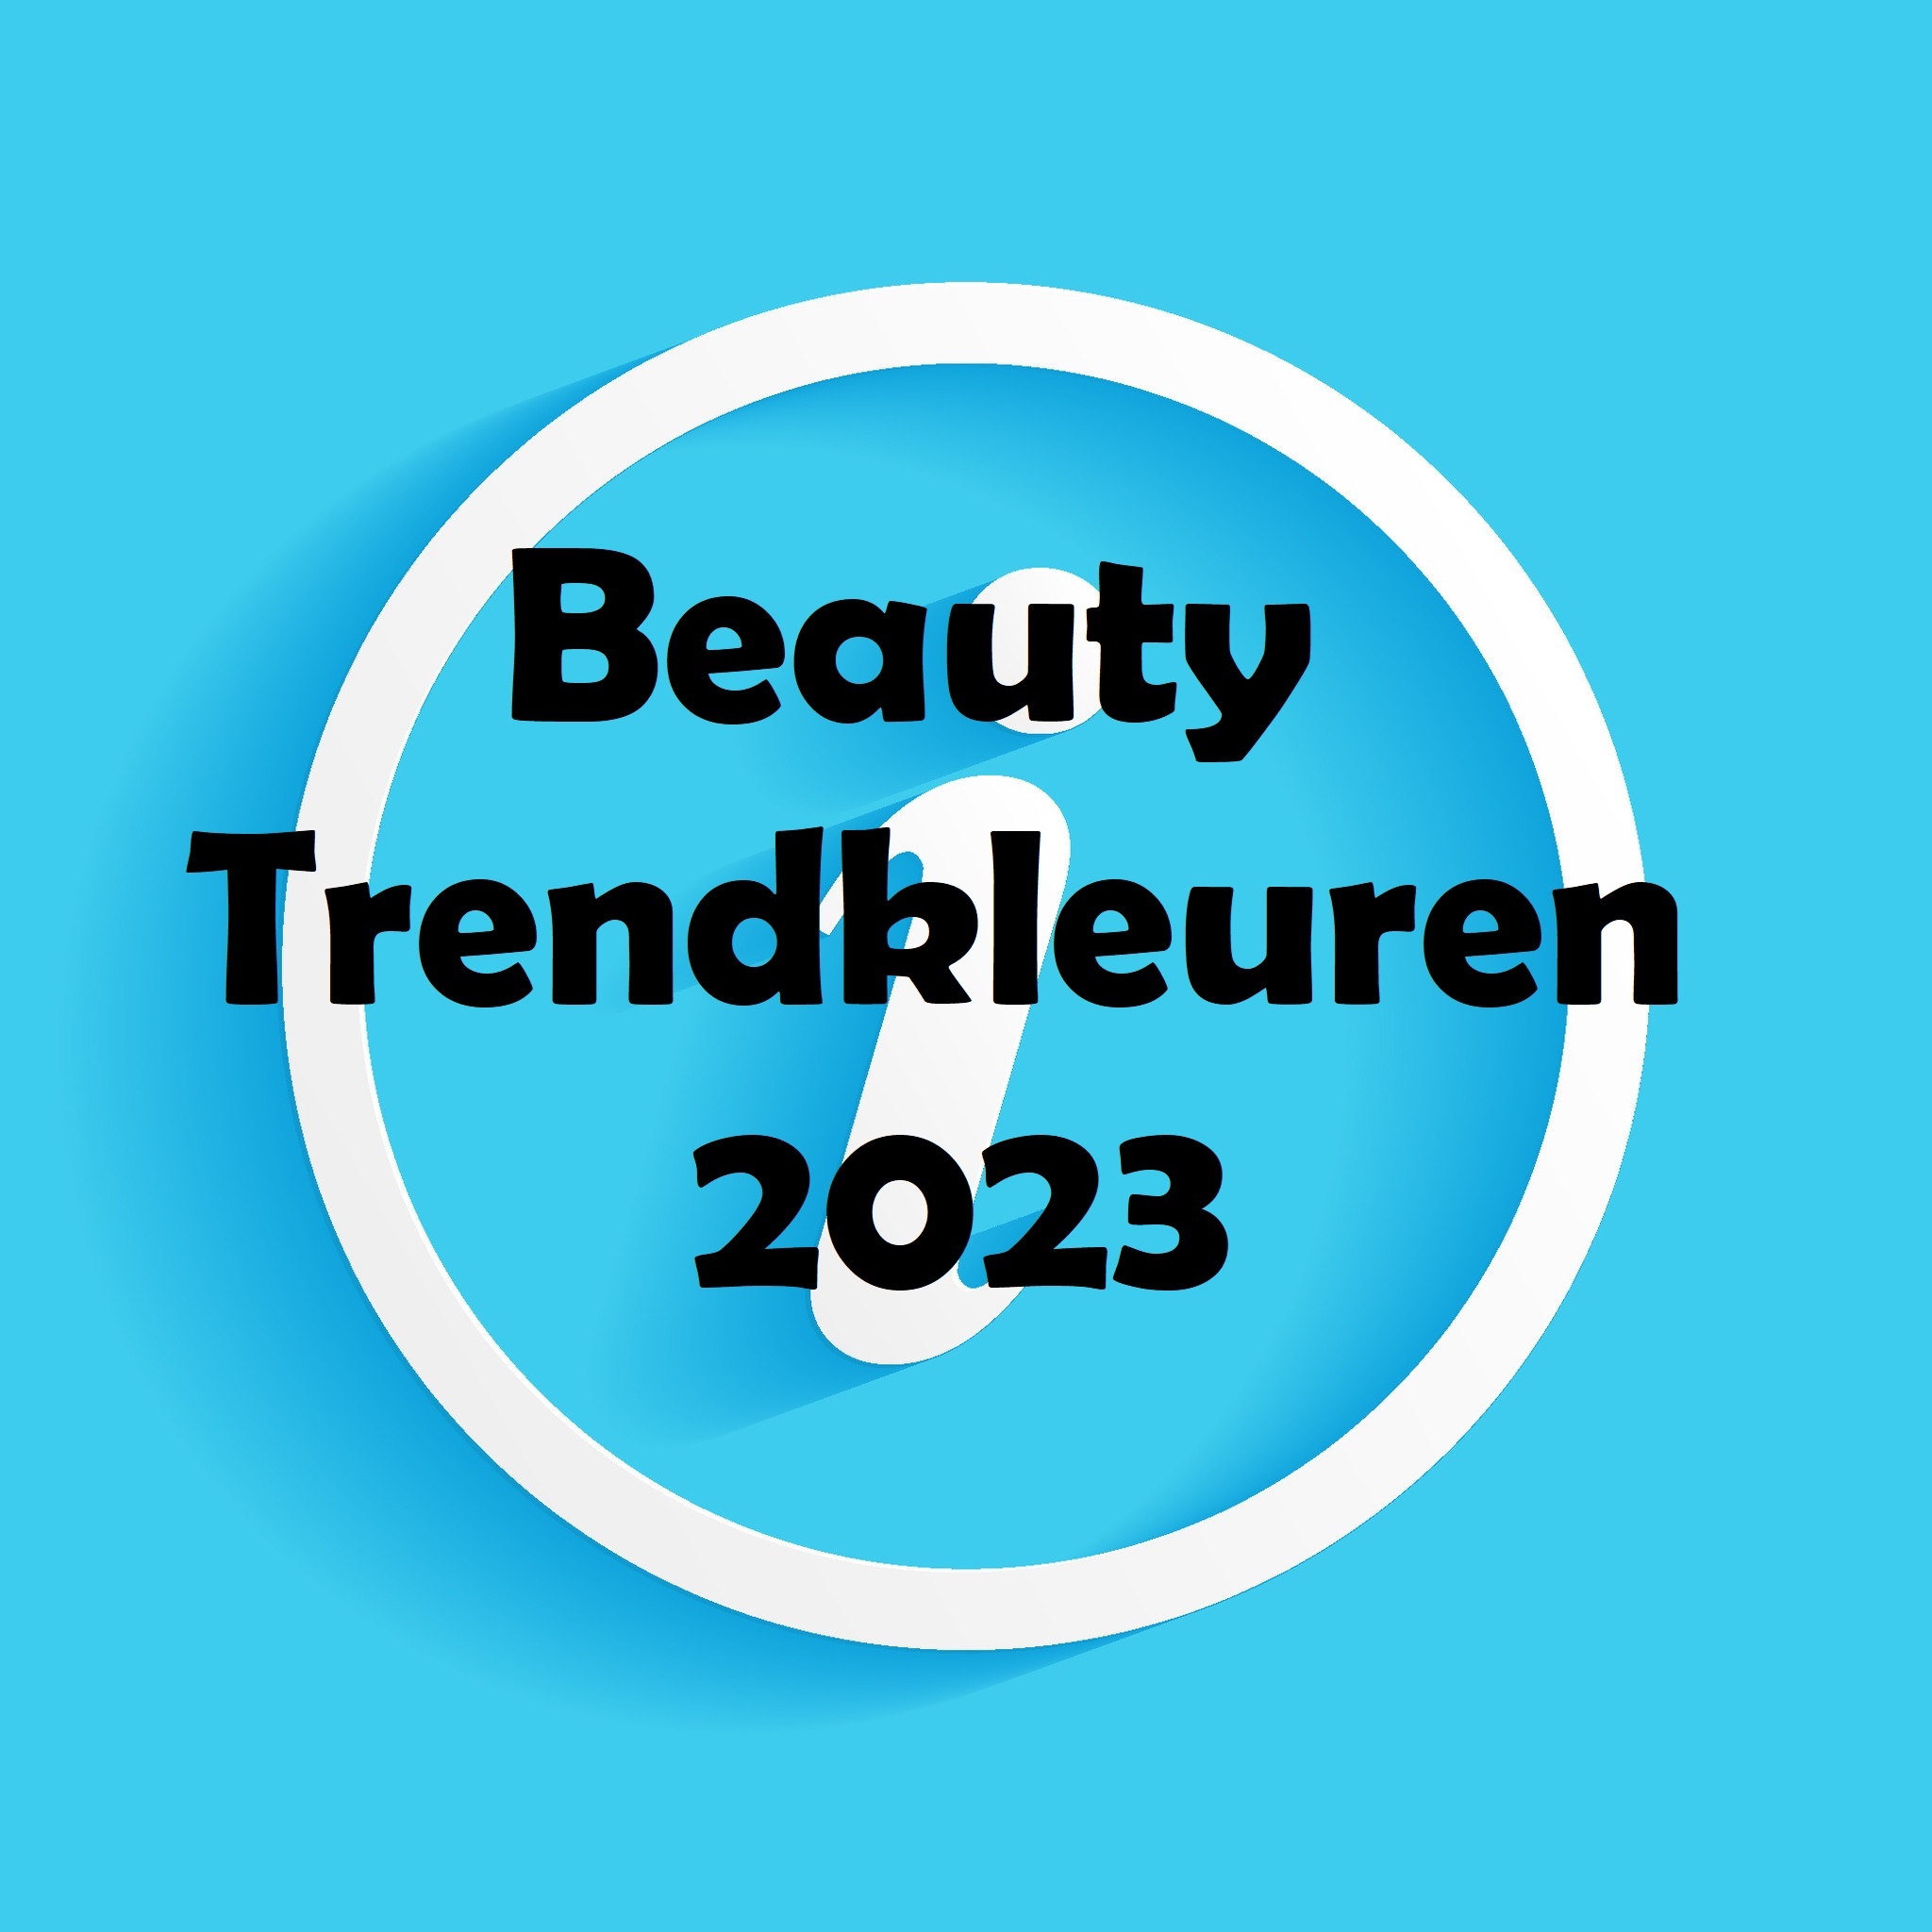 Beauty Trendkleuren 2023